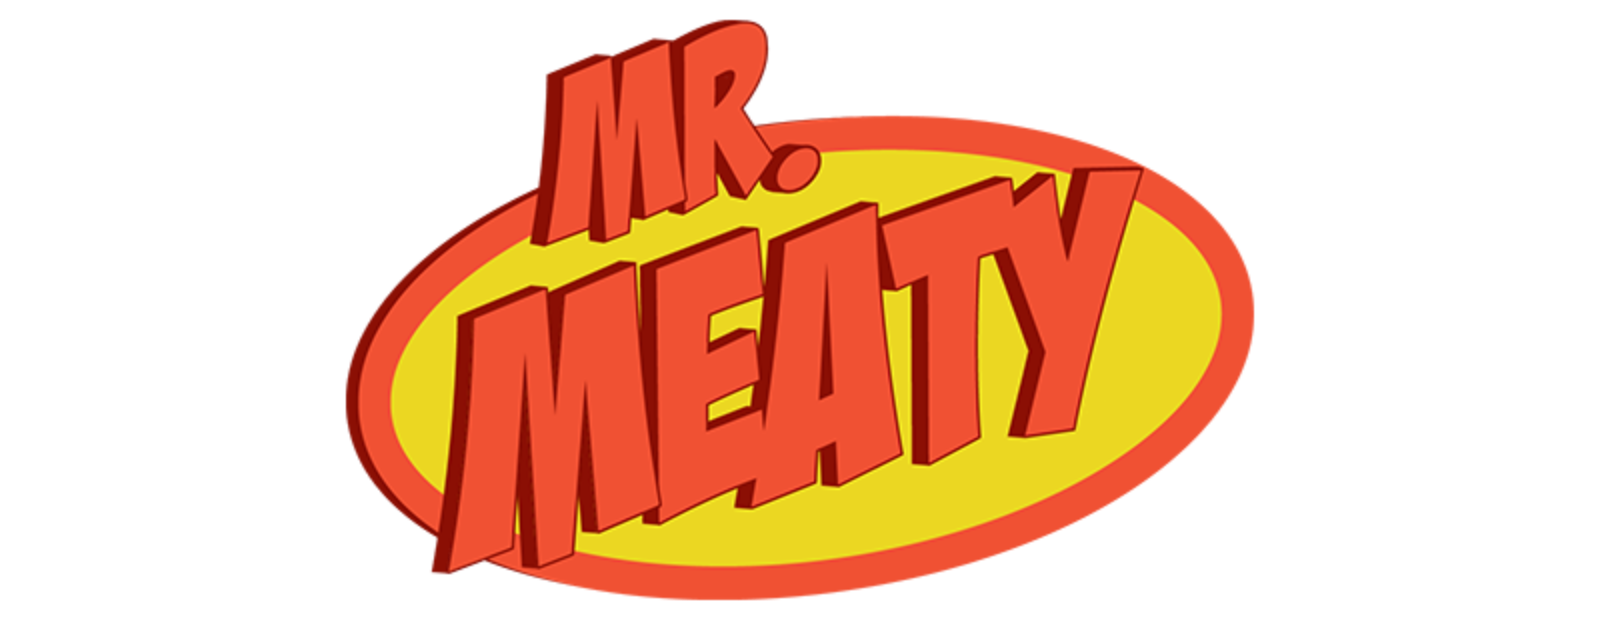 Mr. Meaty (3 DVDs Box Set)